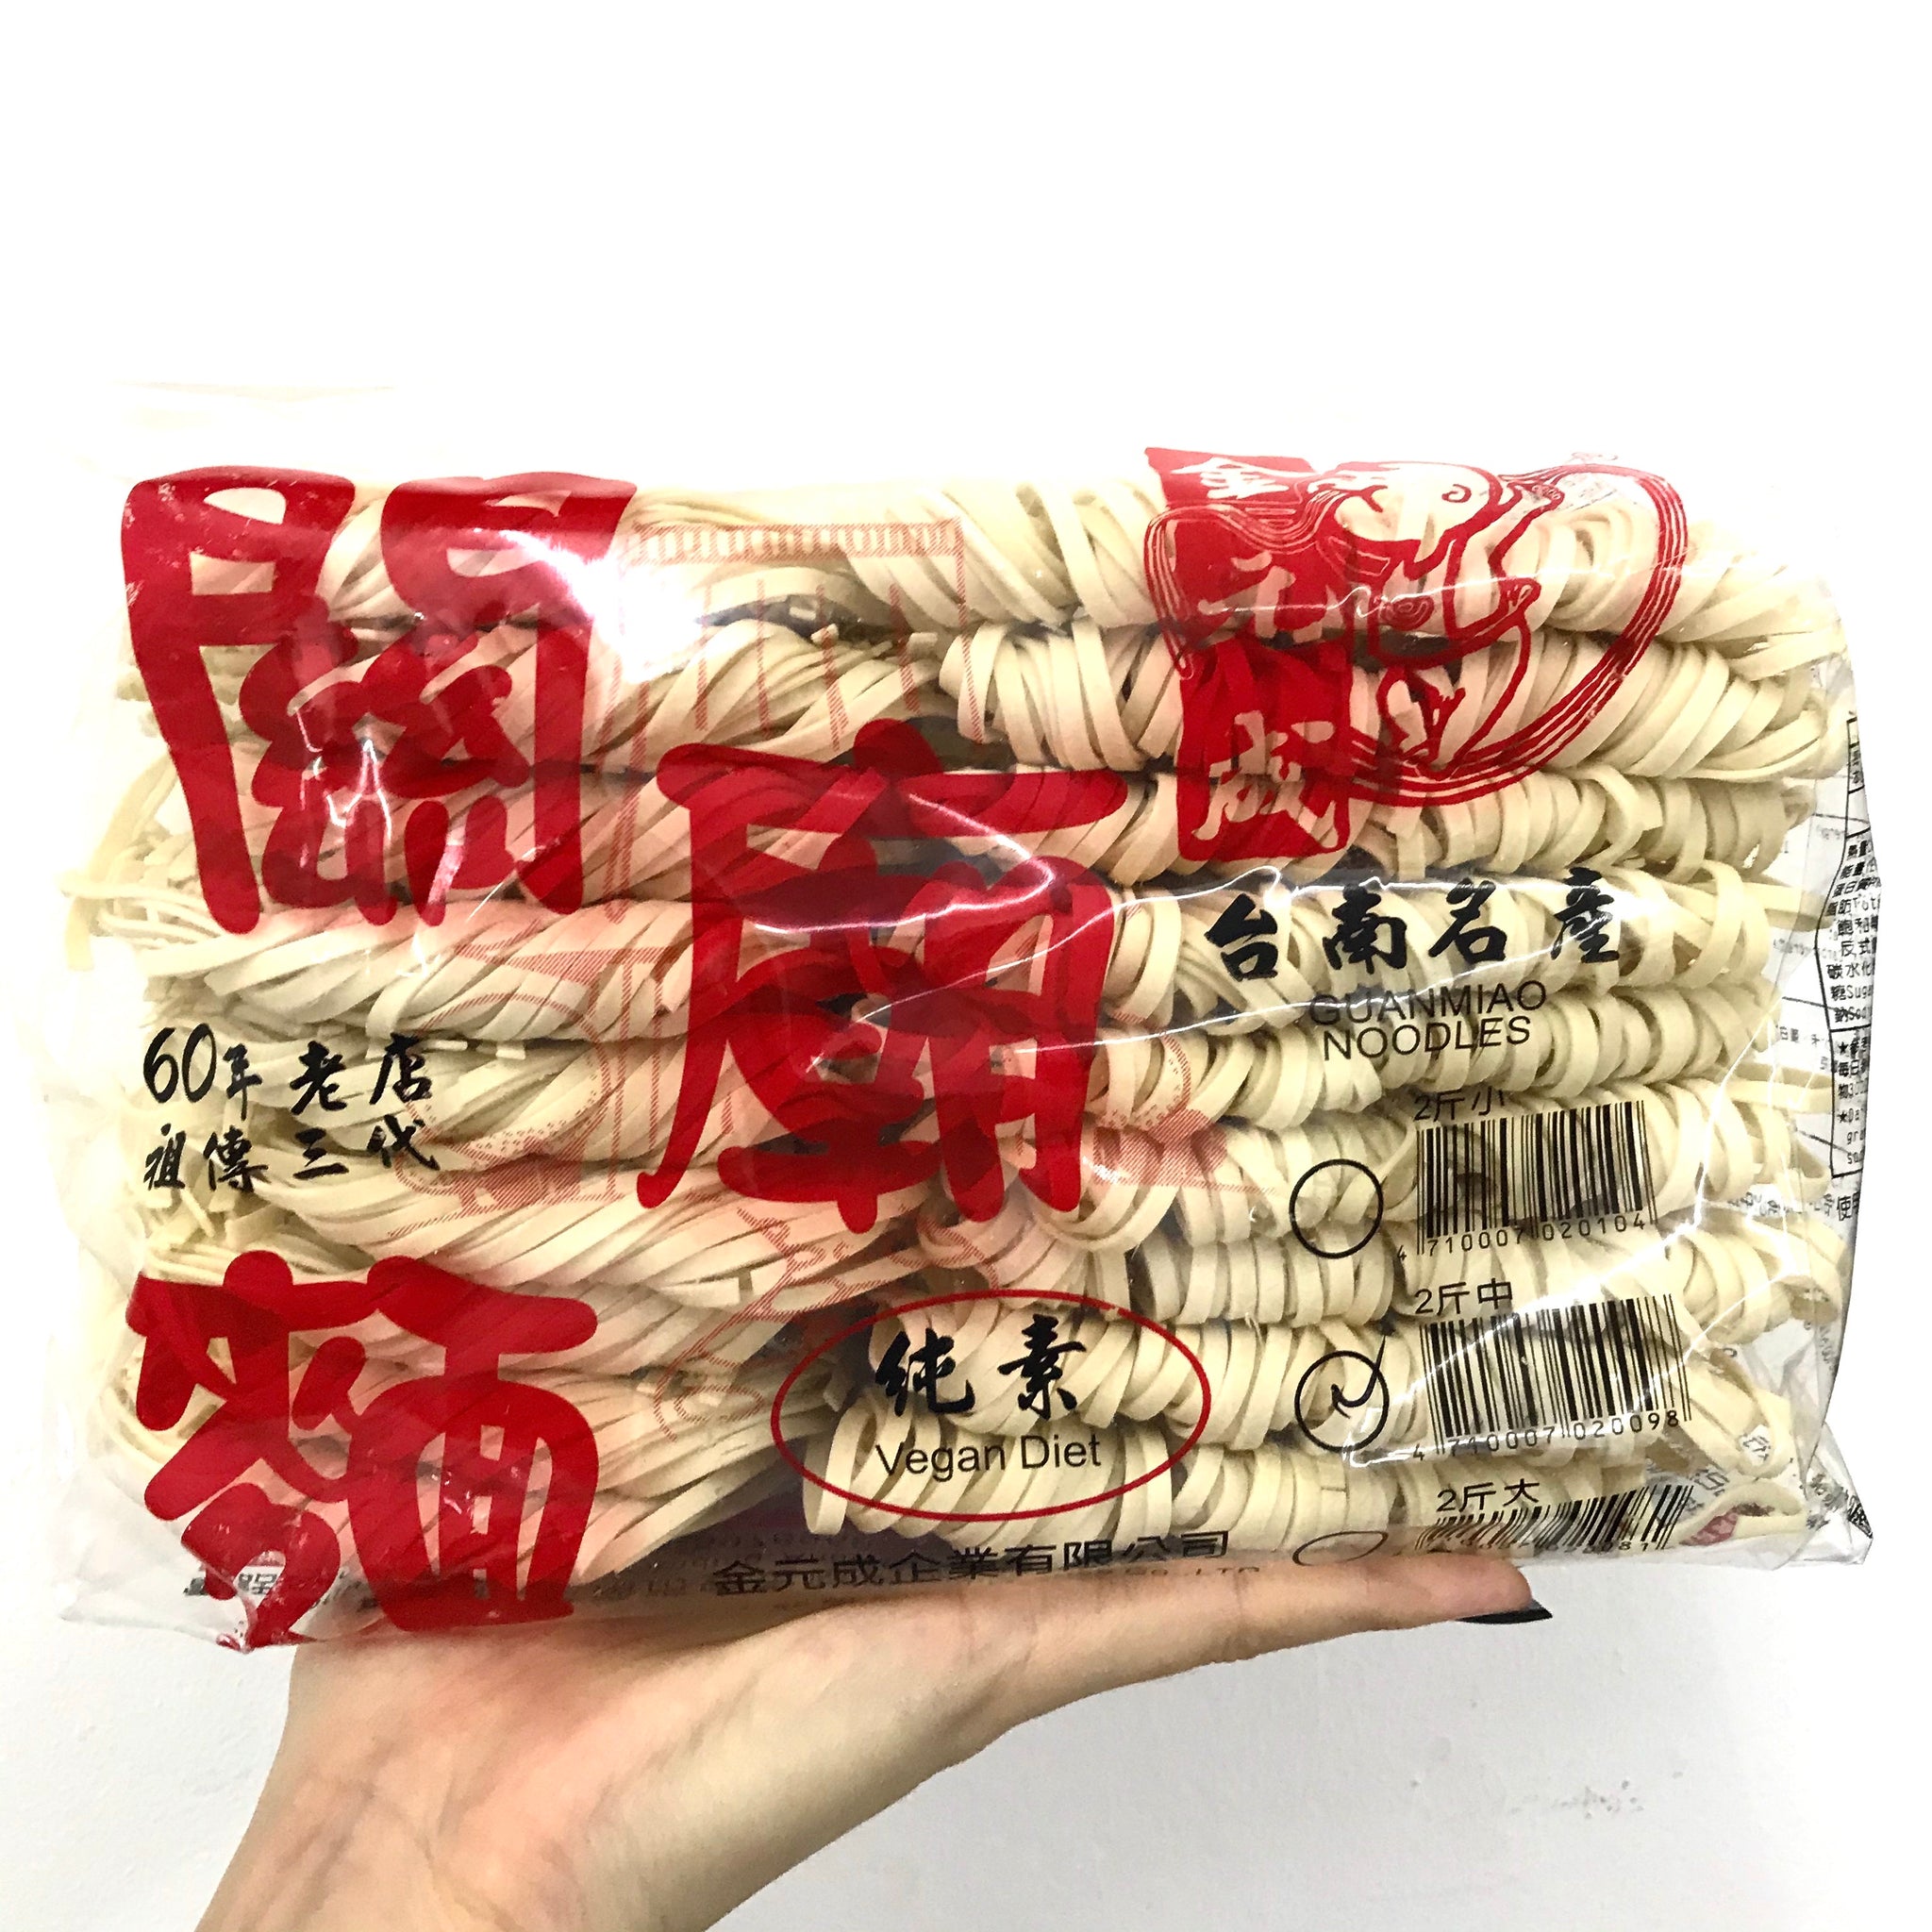 Taiwan Guan Miao noodles Medium Size 1.2kg